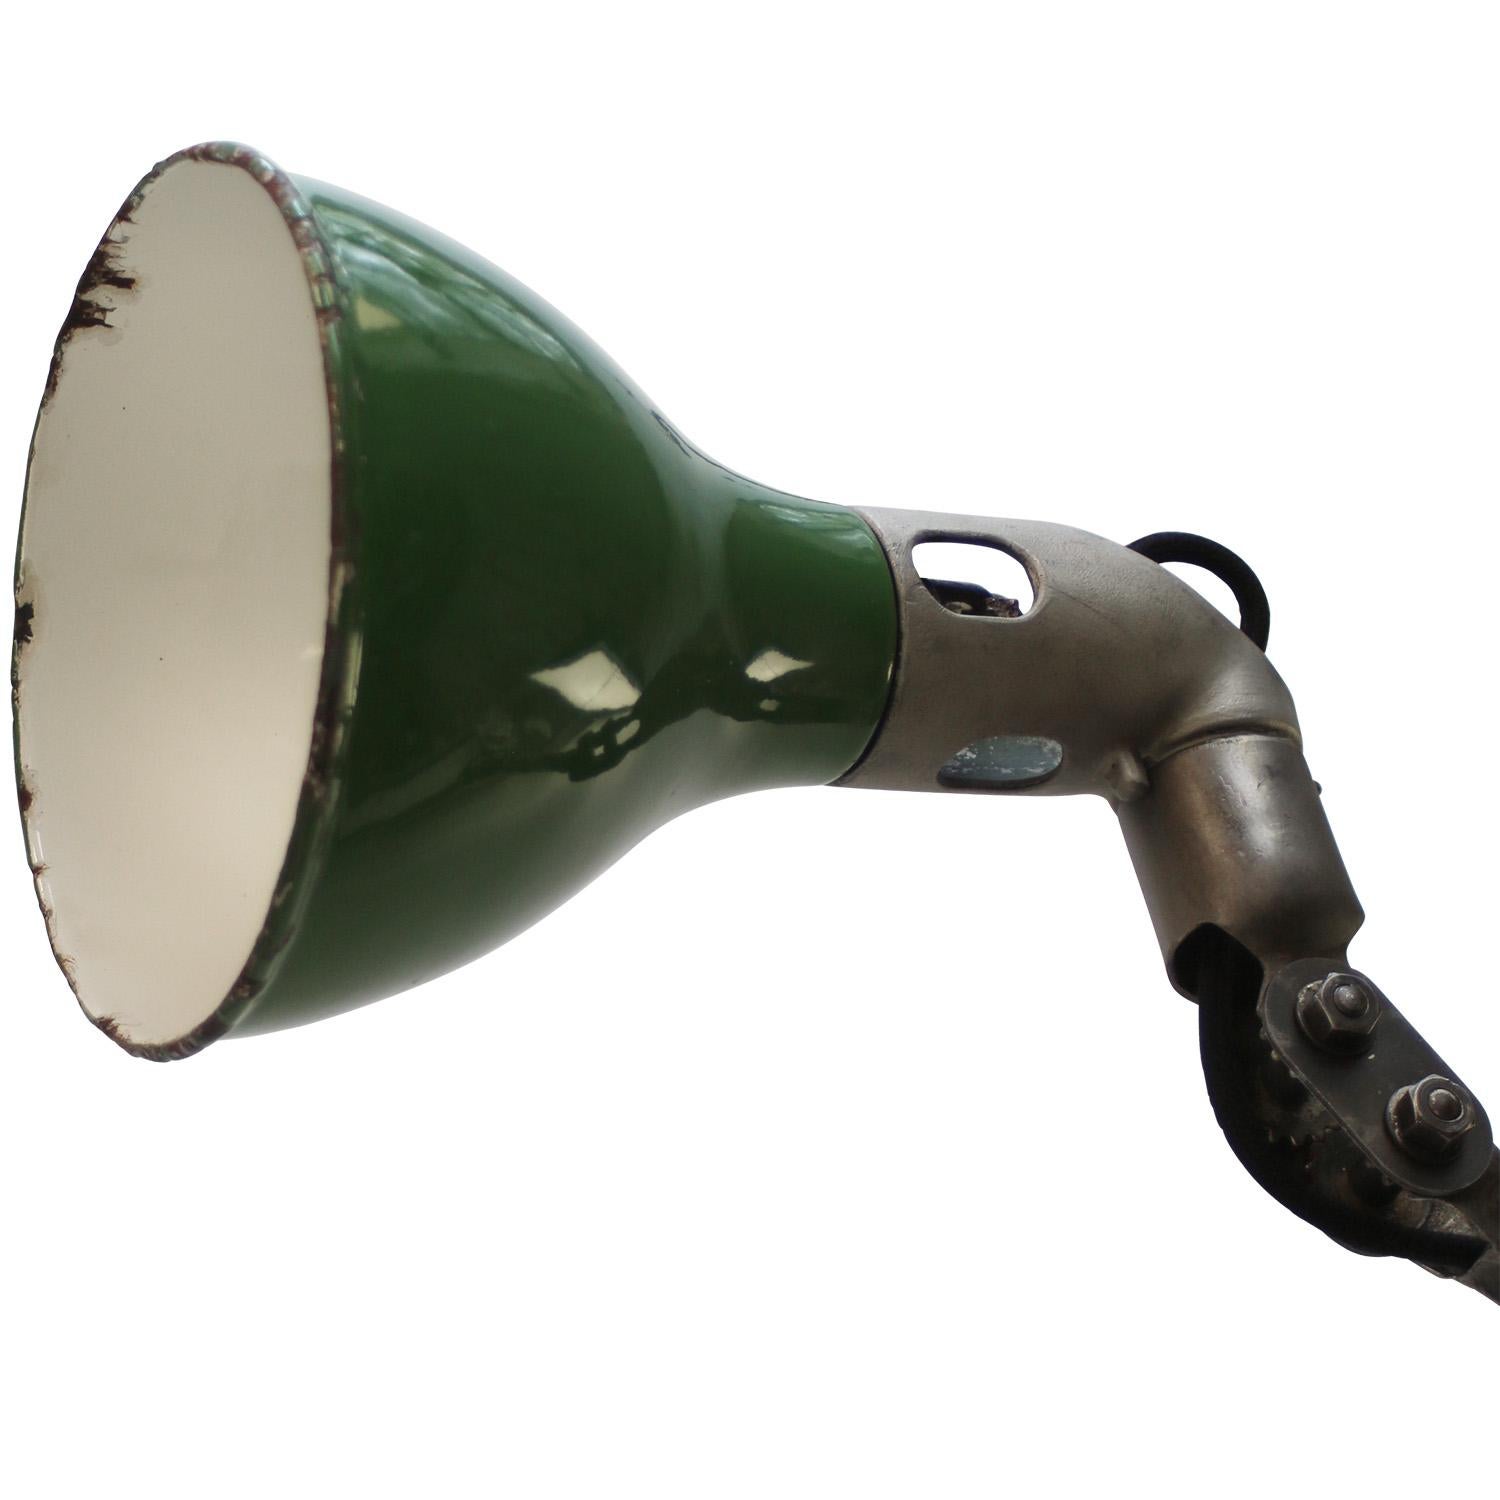 1930s Lampe de travail industrielle à 3 bras en fonte et émail vert par MEK ELEK, UK
Réglable en hauteur et en inclinaison
y compris la prise et l'interrupteur.

Diamètre de la base 13,5 cm

Support d'ampoule B22

Poids : 4,20 kg / 9,3